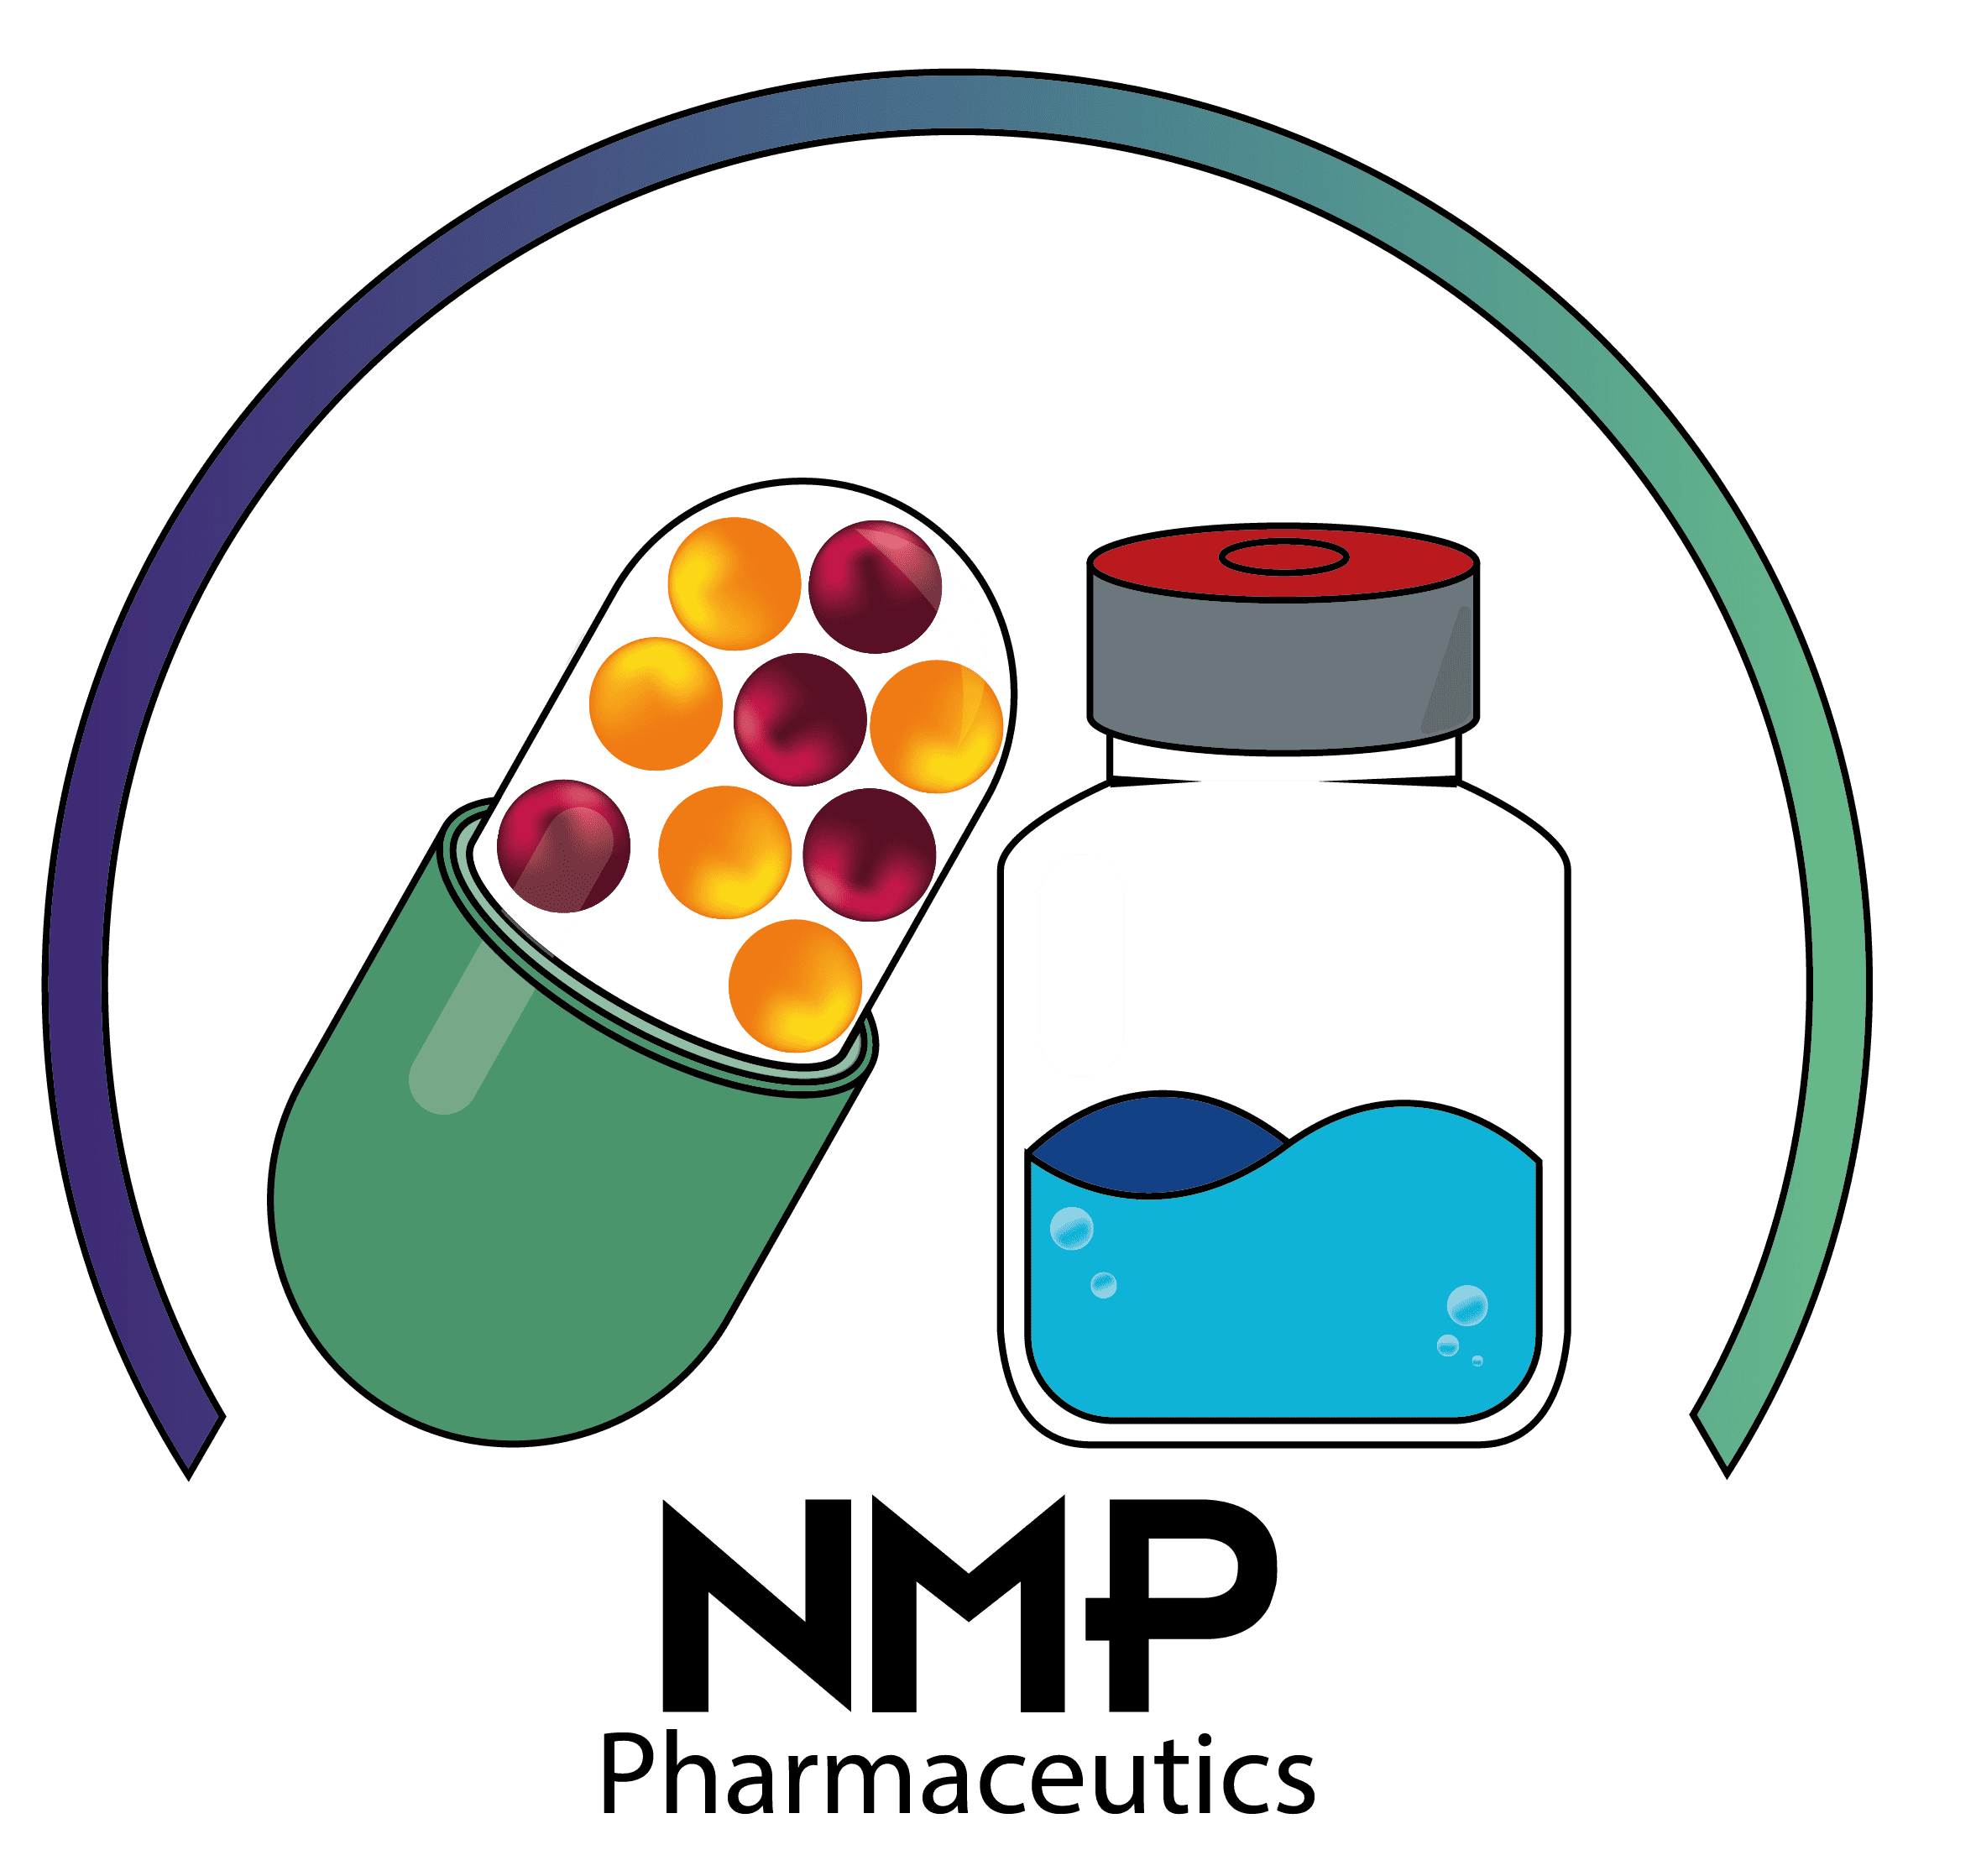 NMP Pharmaceutics